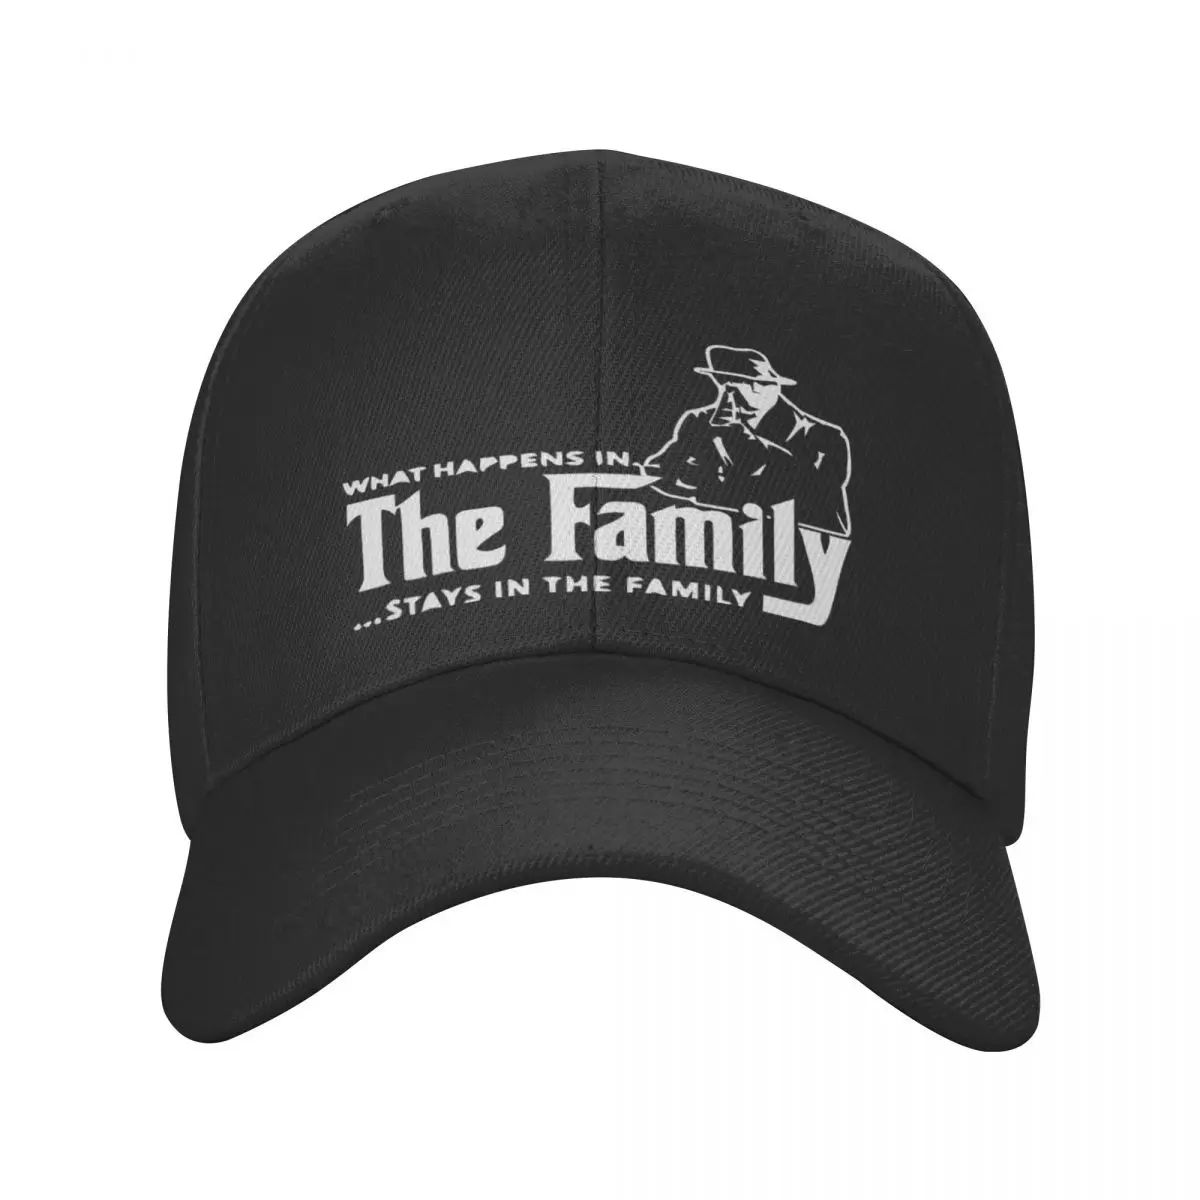 

Семейная футболка Mob, Кепка из полиэстера, персонализированная шляпа, впитывающий влагу подарок, хороший подарок